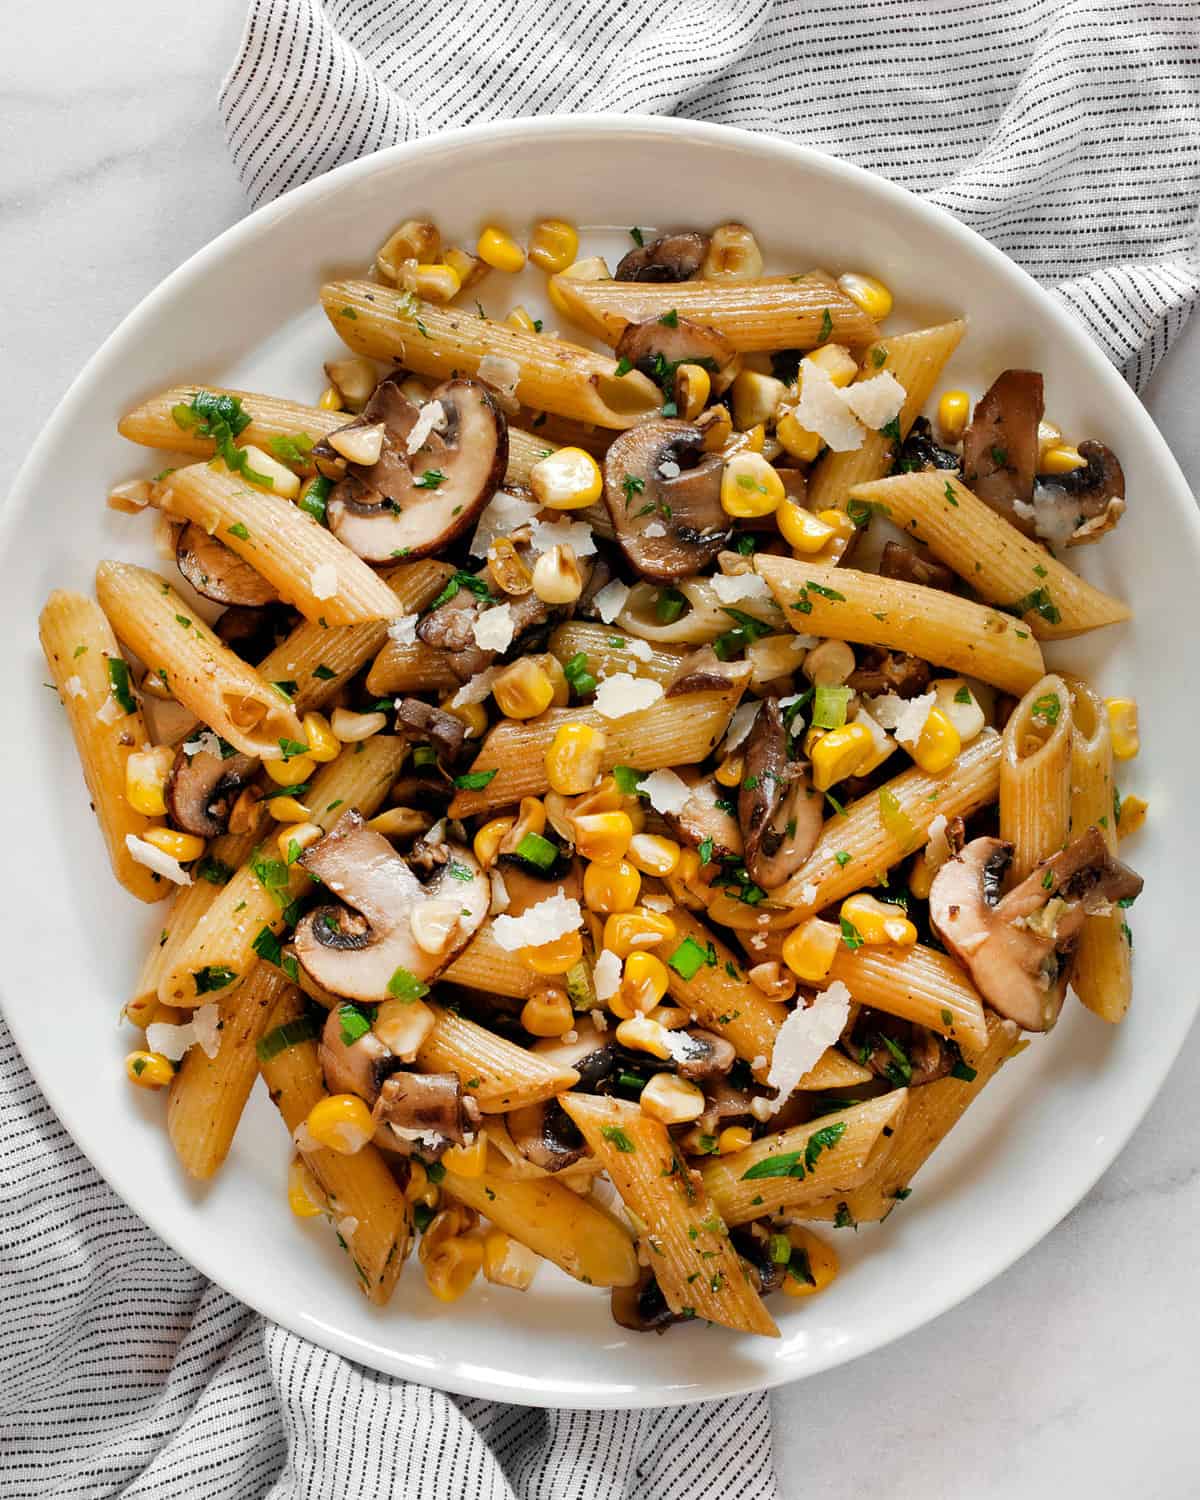 Mushroom corn pasta on a plate.